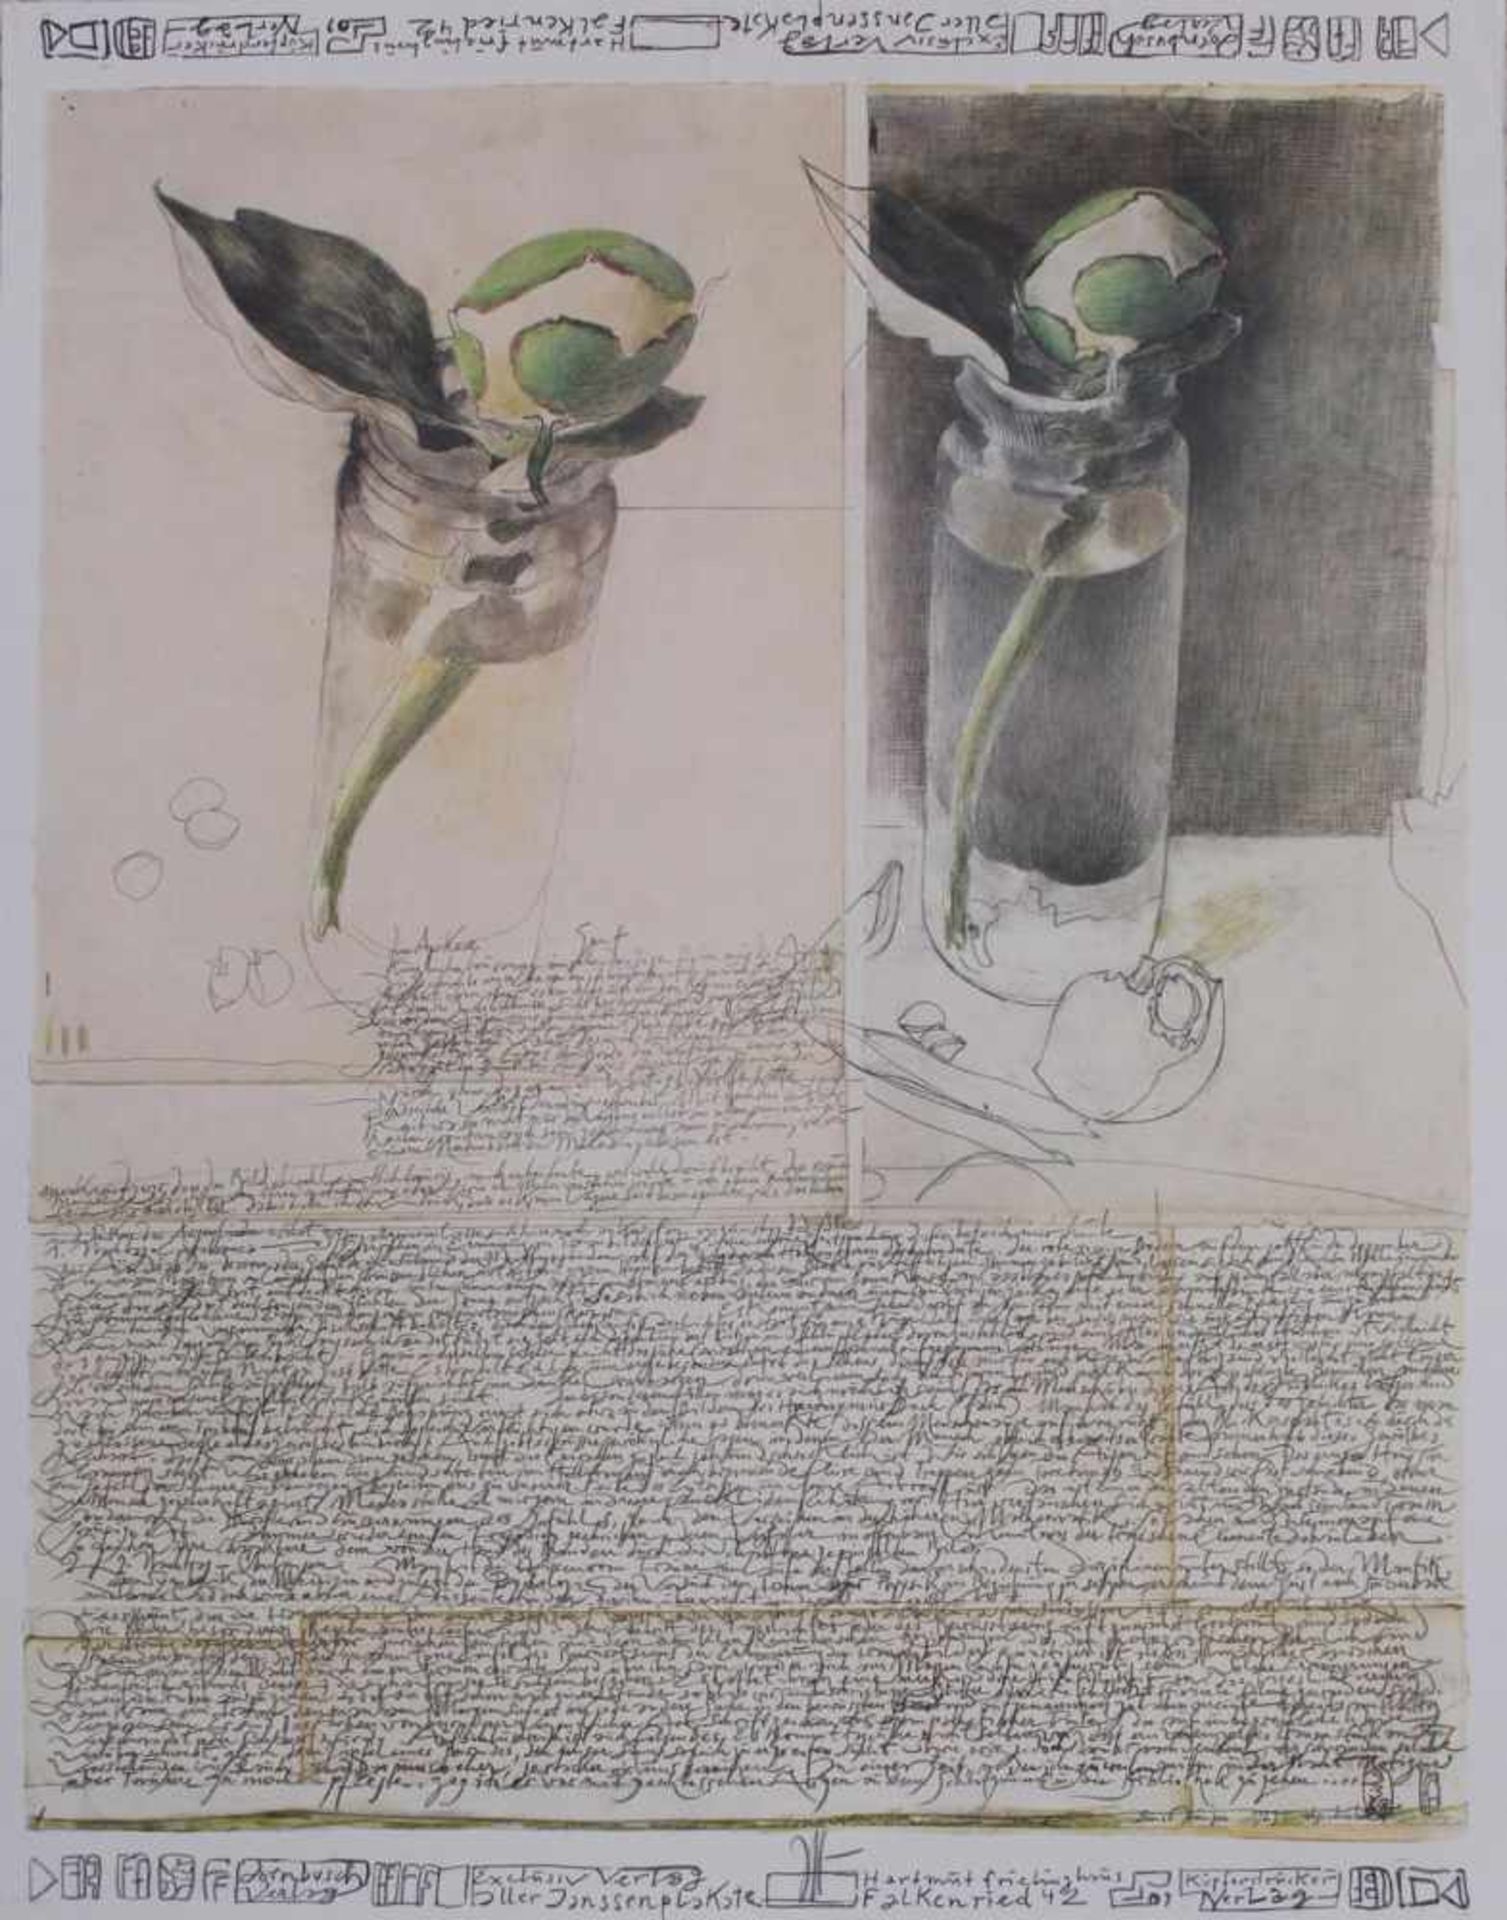 Horst Janssen (1929 - 1995)2 Kunstdrucke, "Aprikose" ca. 67 x 52 cm. "Einladung zur Nacht am 8. Juli - Bild 2 aus 3